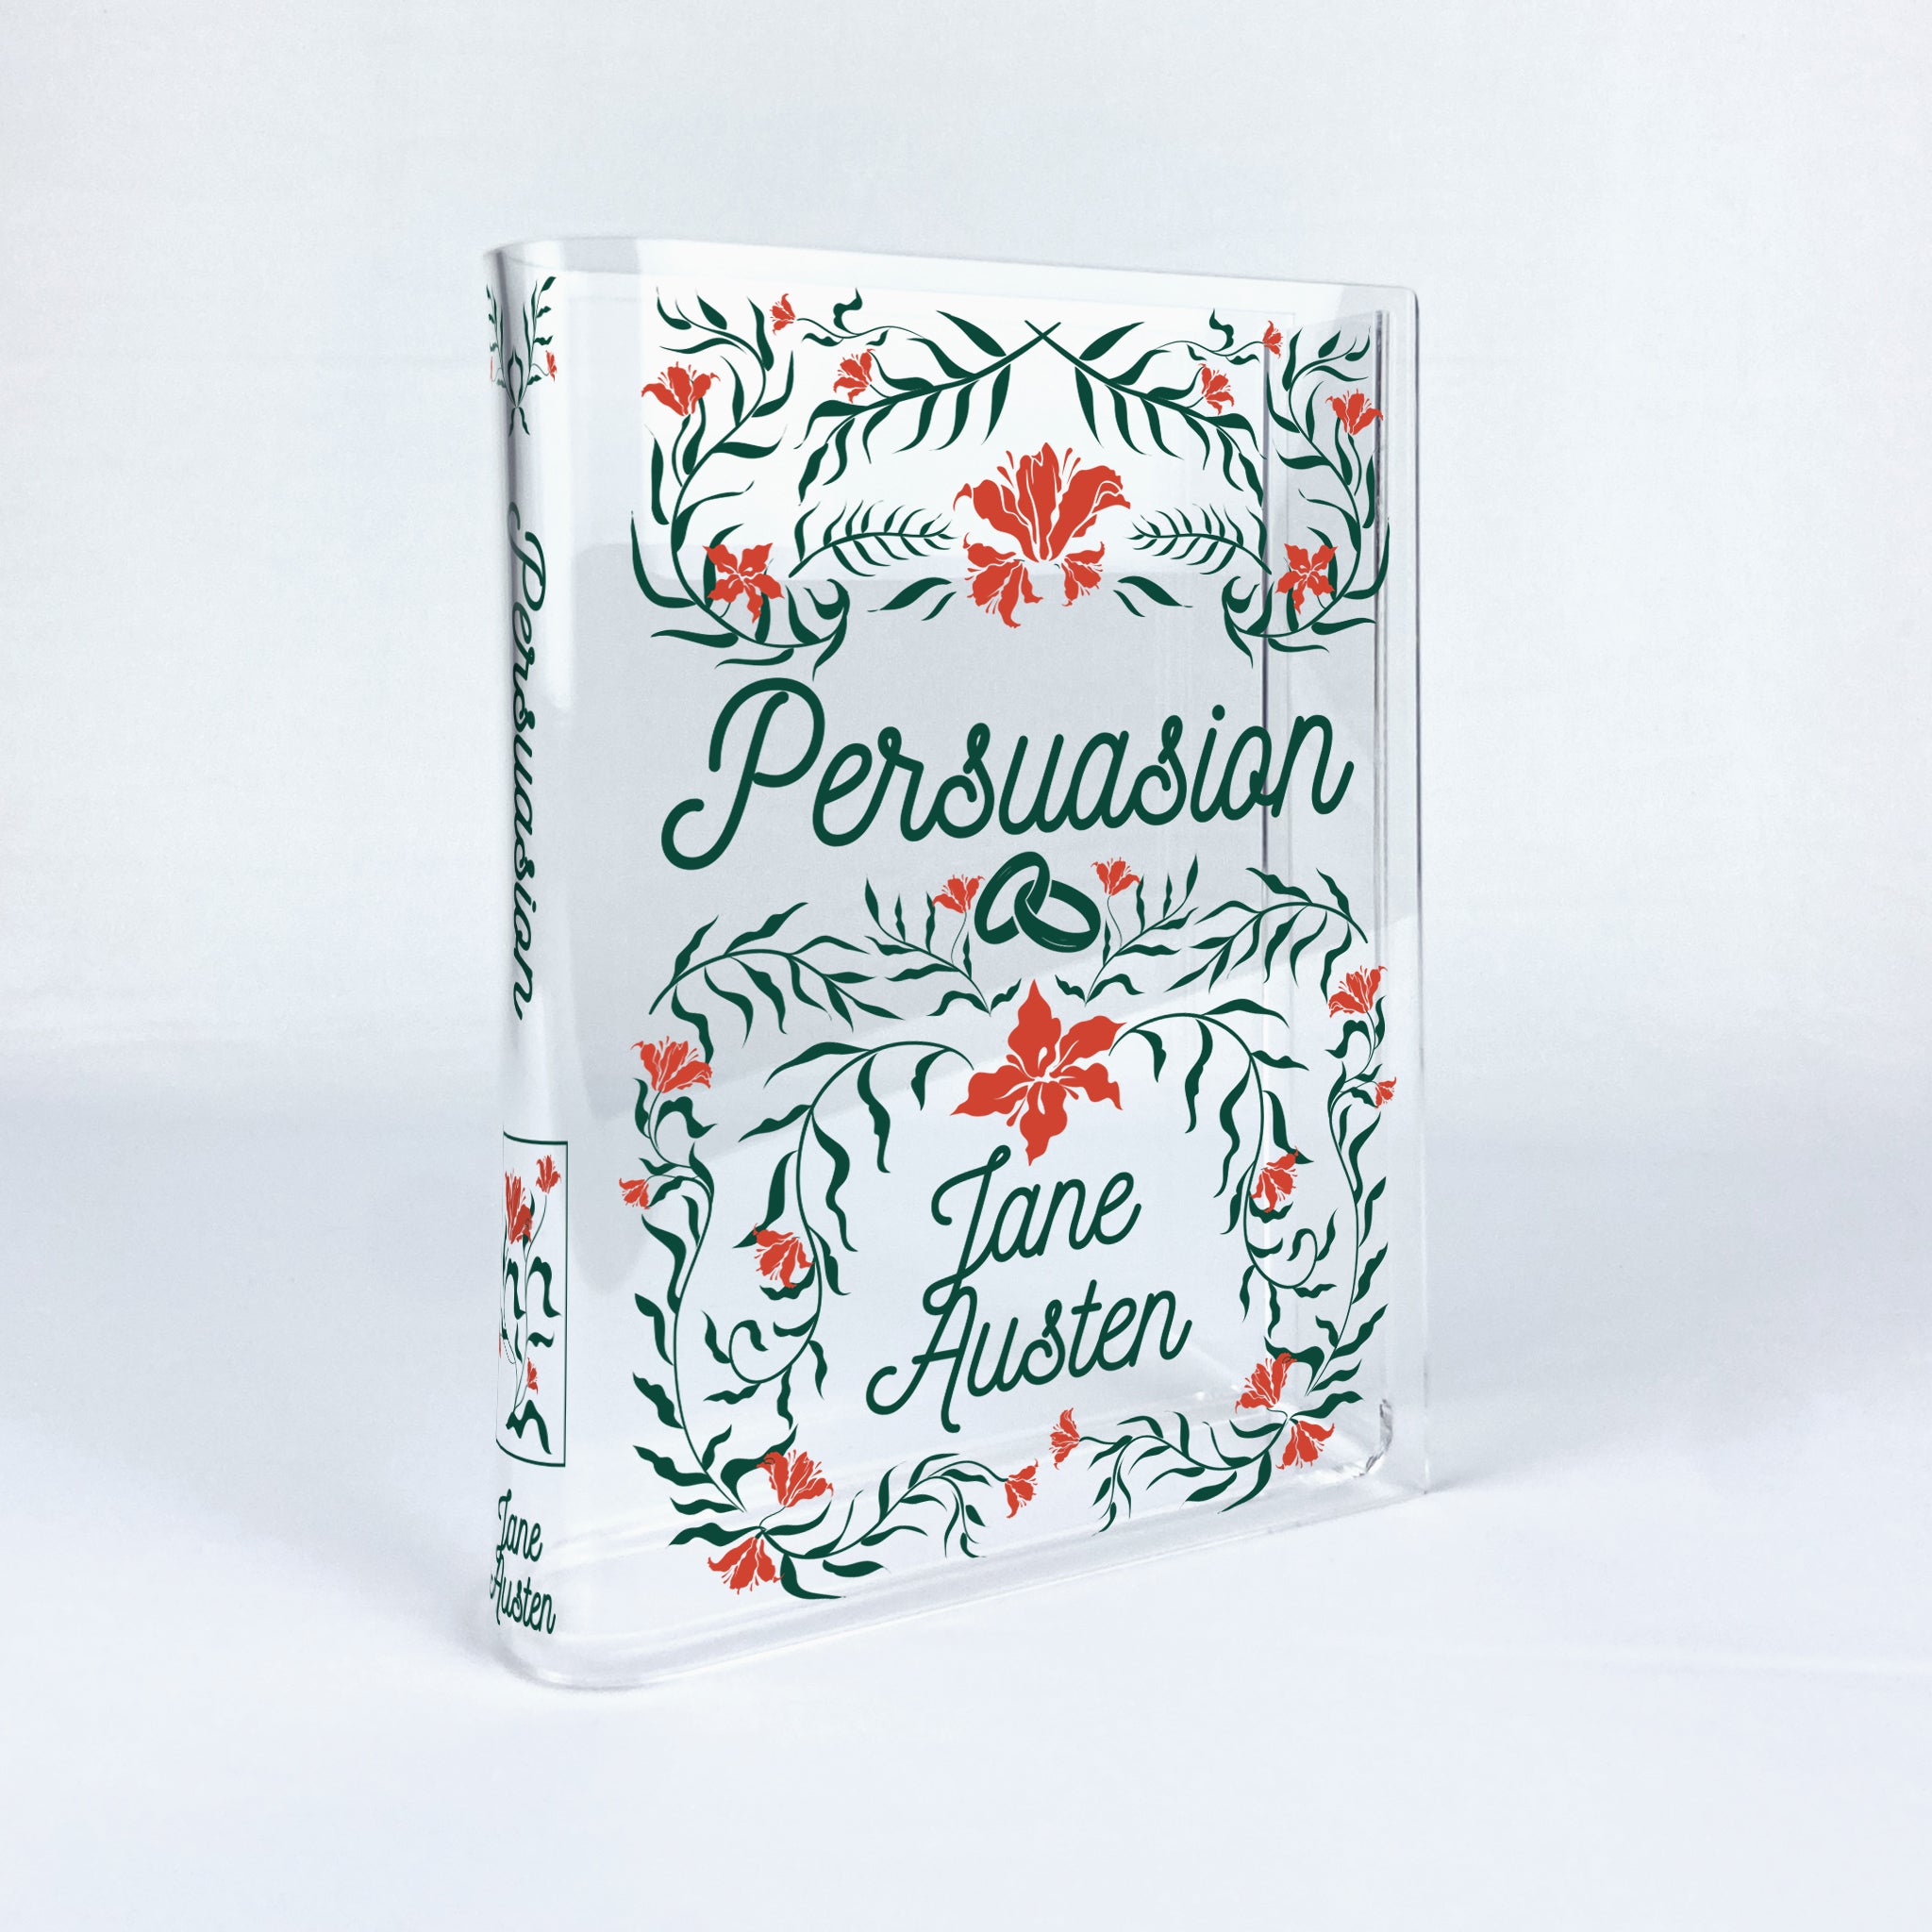 Persuasion Acrylic Book Vase - II